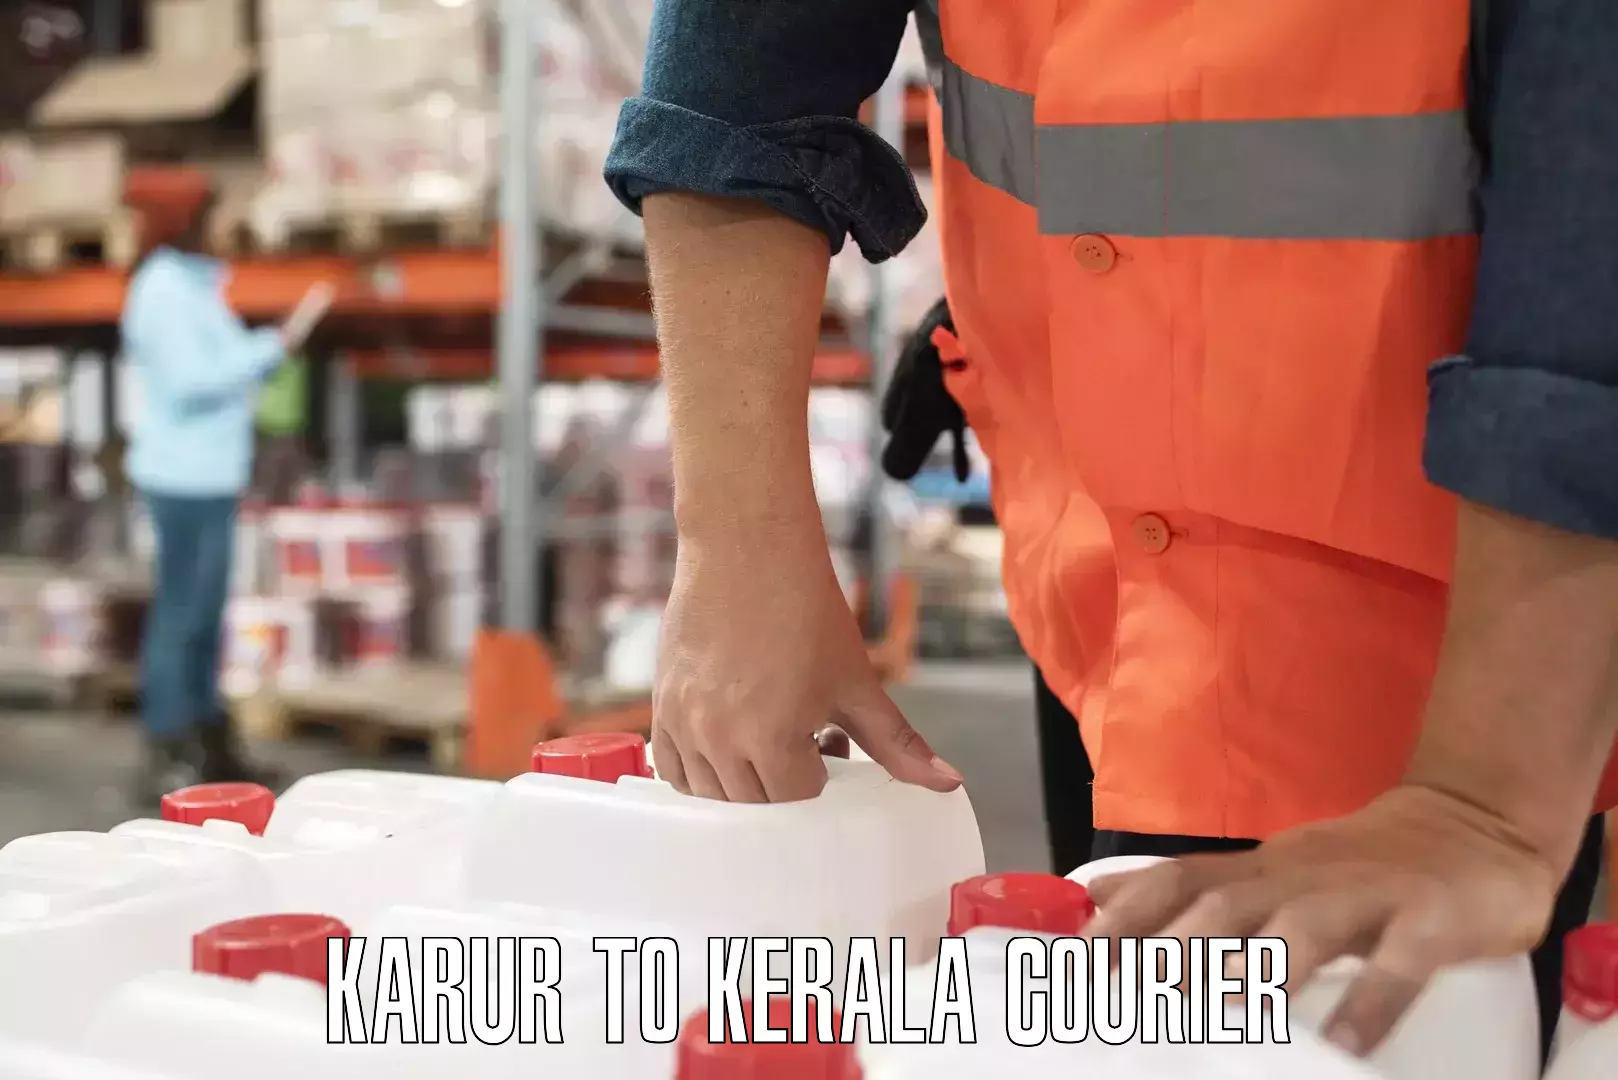 Custom courier packaging Karur to Kerala